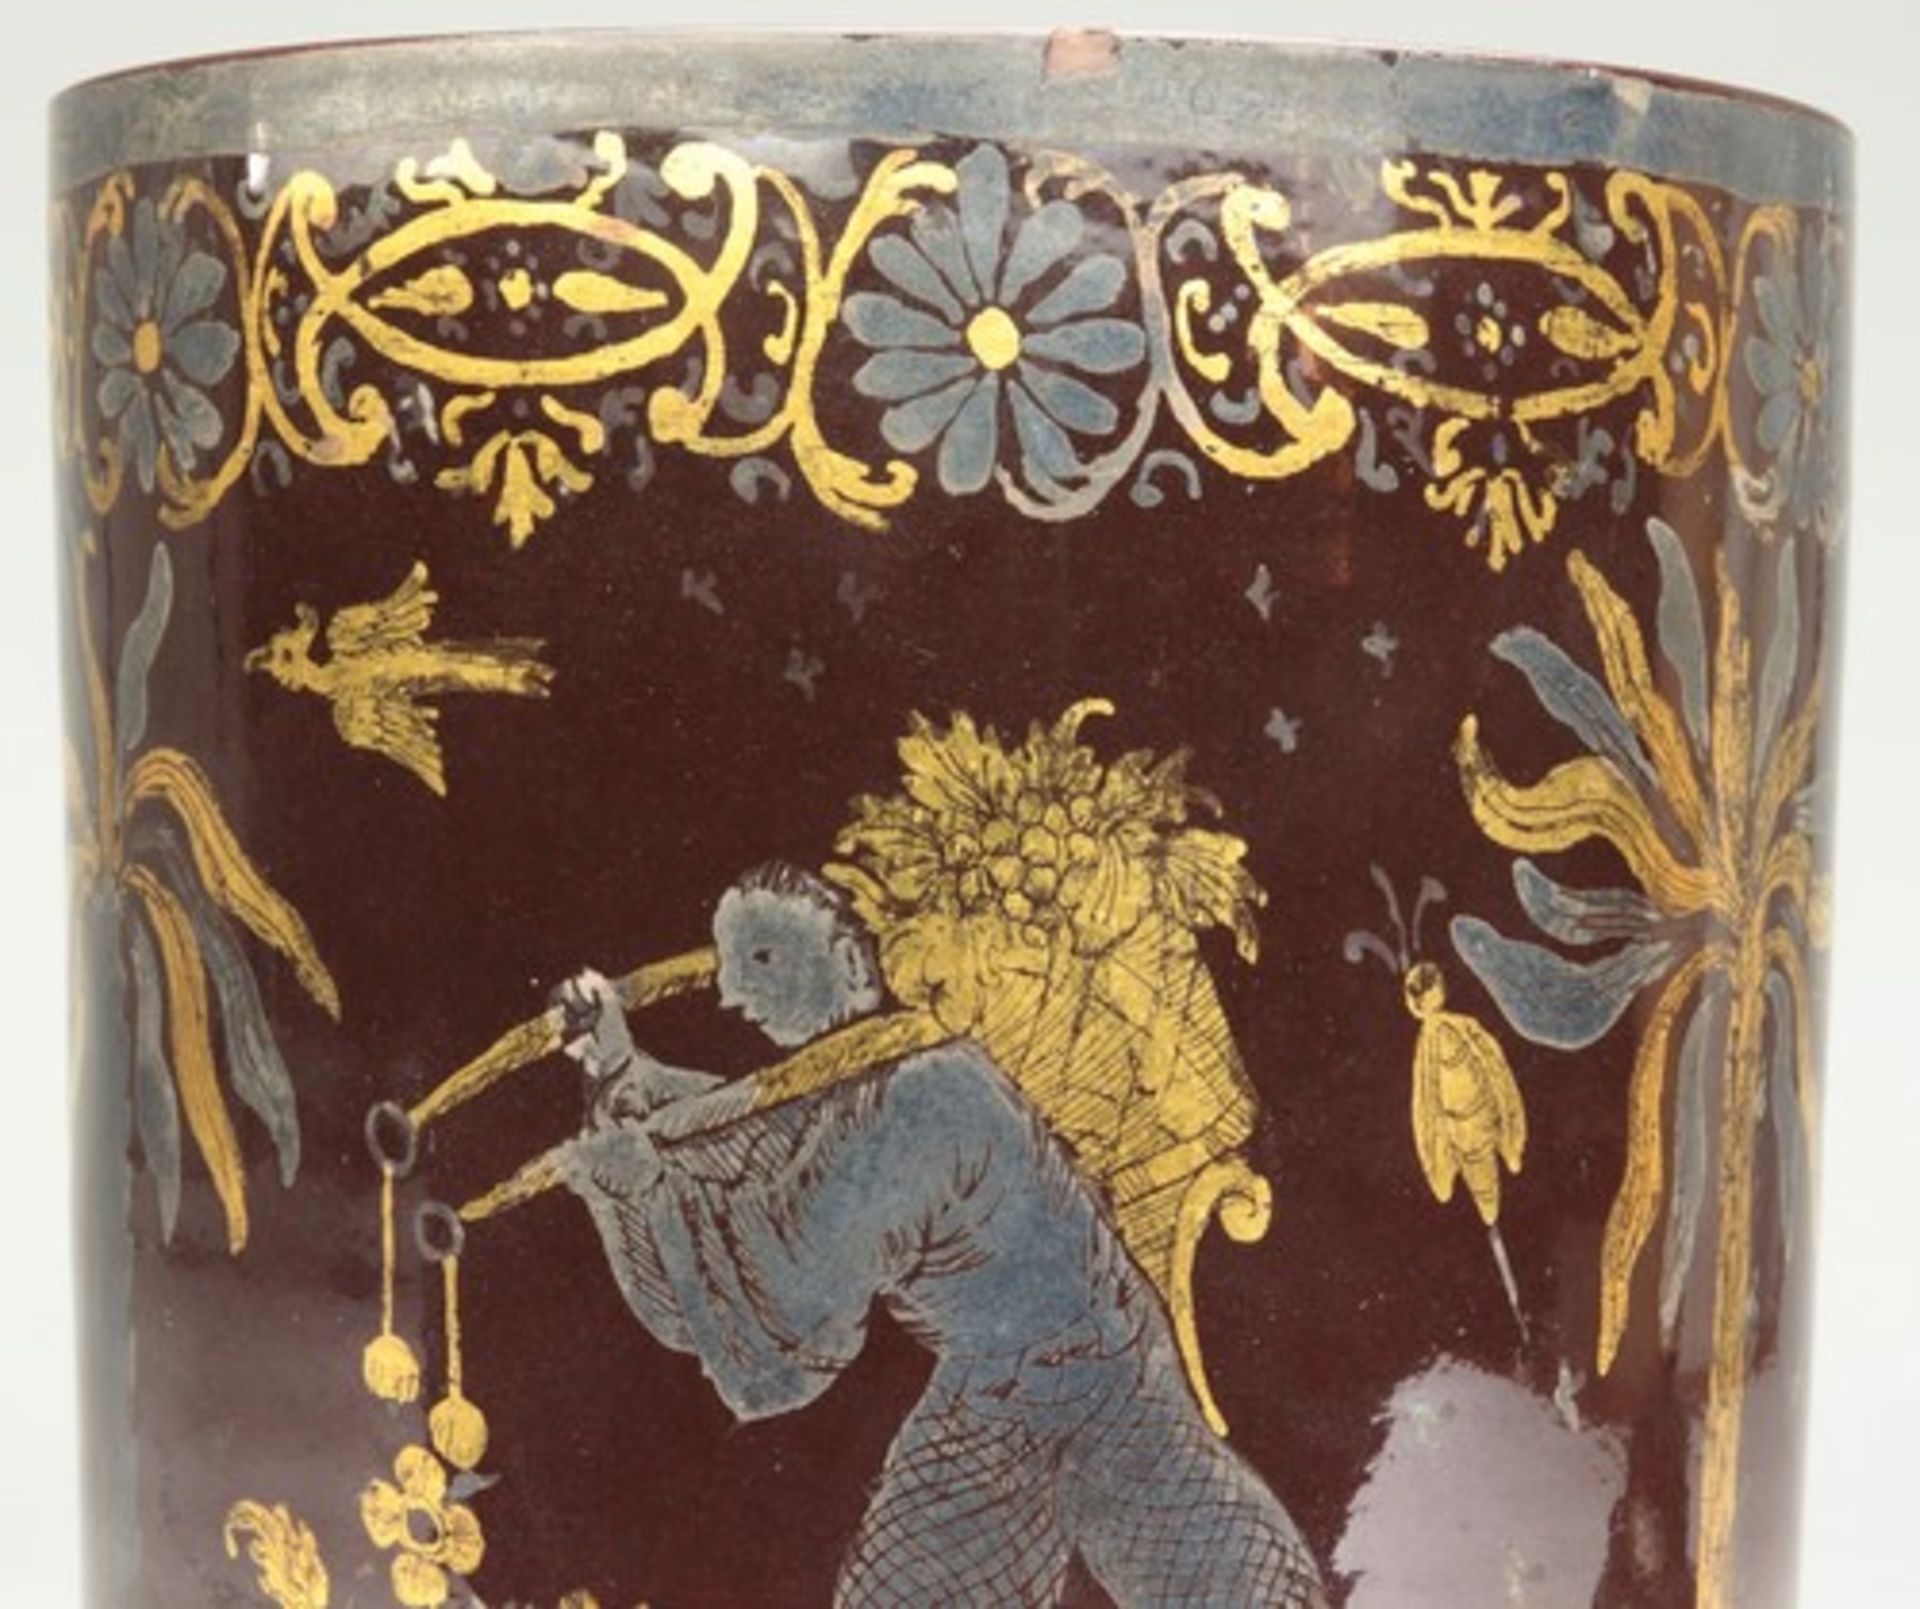 Fayence - Becher1728-1744, Bayreuth, Knöllerperiode, roter Scherben, kaffeebraune Glasur, seltener - Bild 8 aus 12